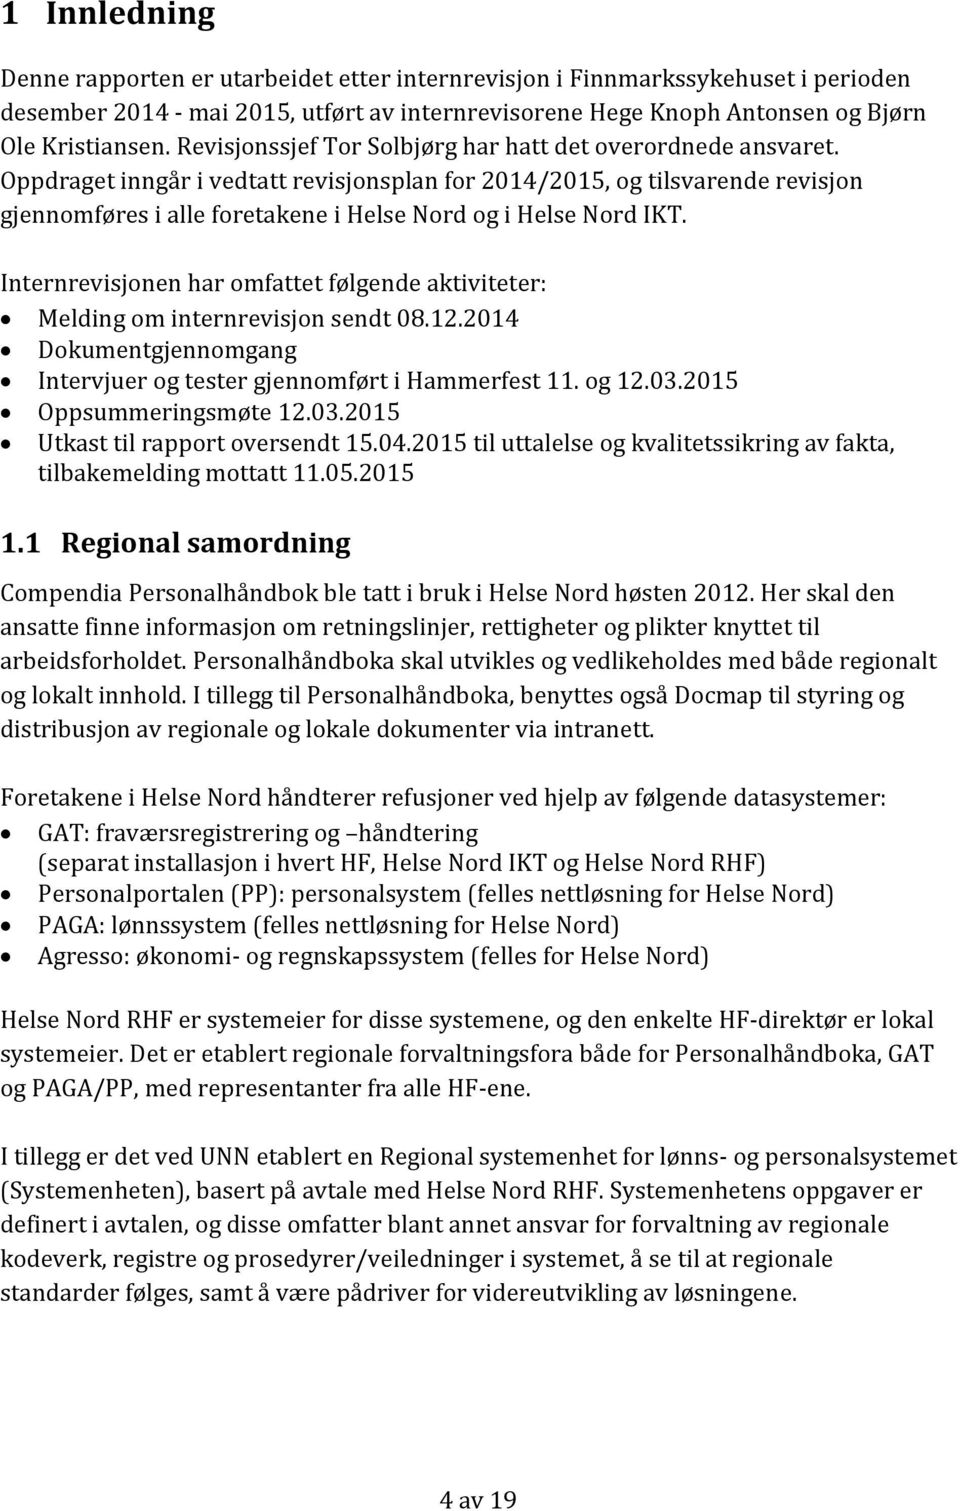 Oppdraget inngår i vedtatt revisjonsplan for 2014/2015, og tilsvarende revisjon gjennomføres i alle foretakene i Helse Nord og i Helse Nord IKT.